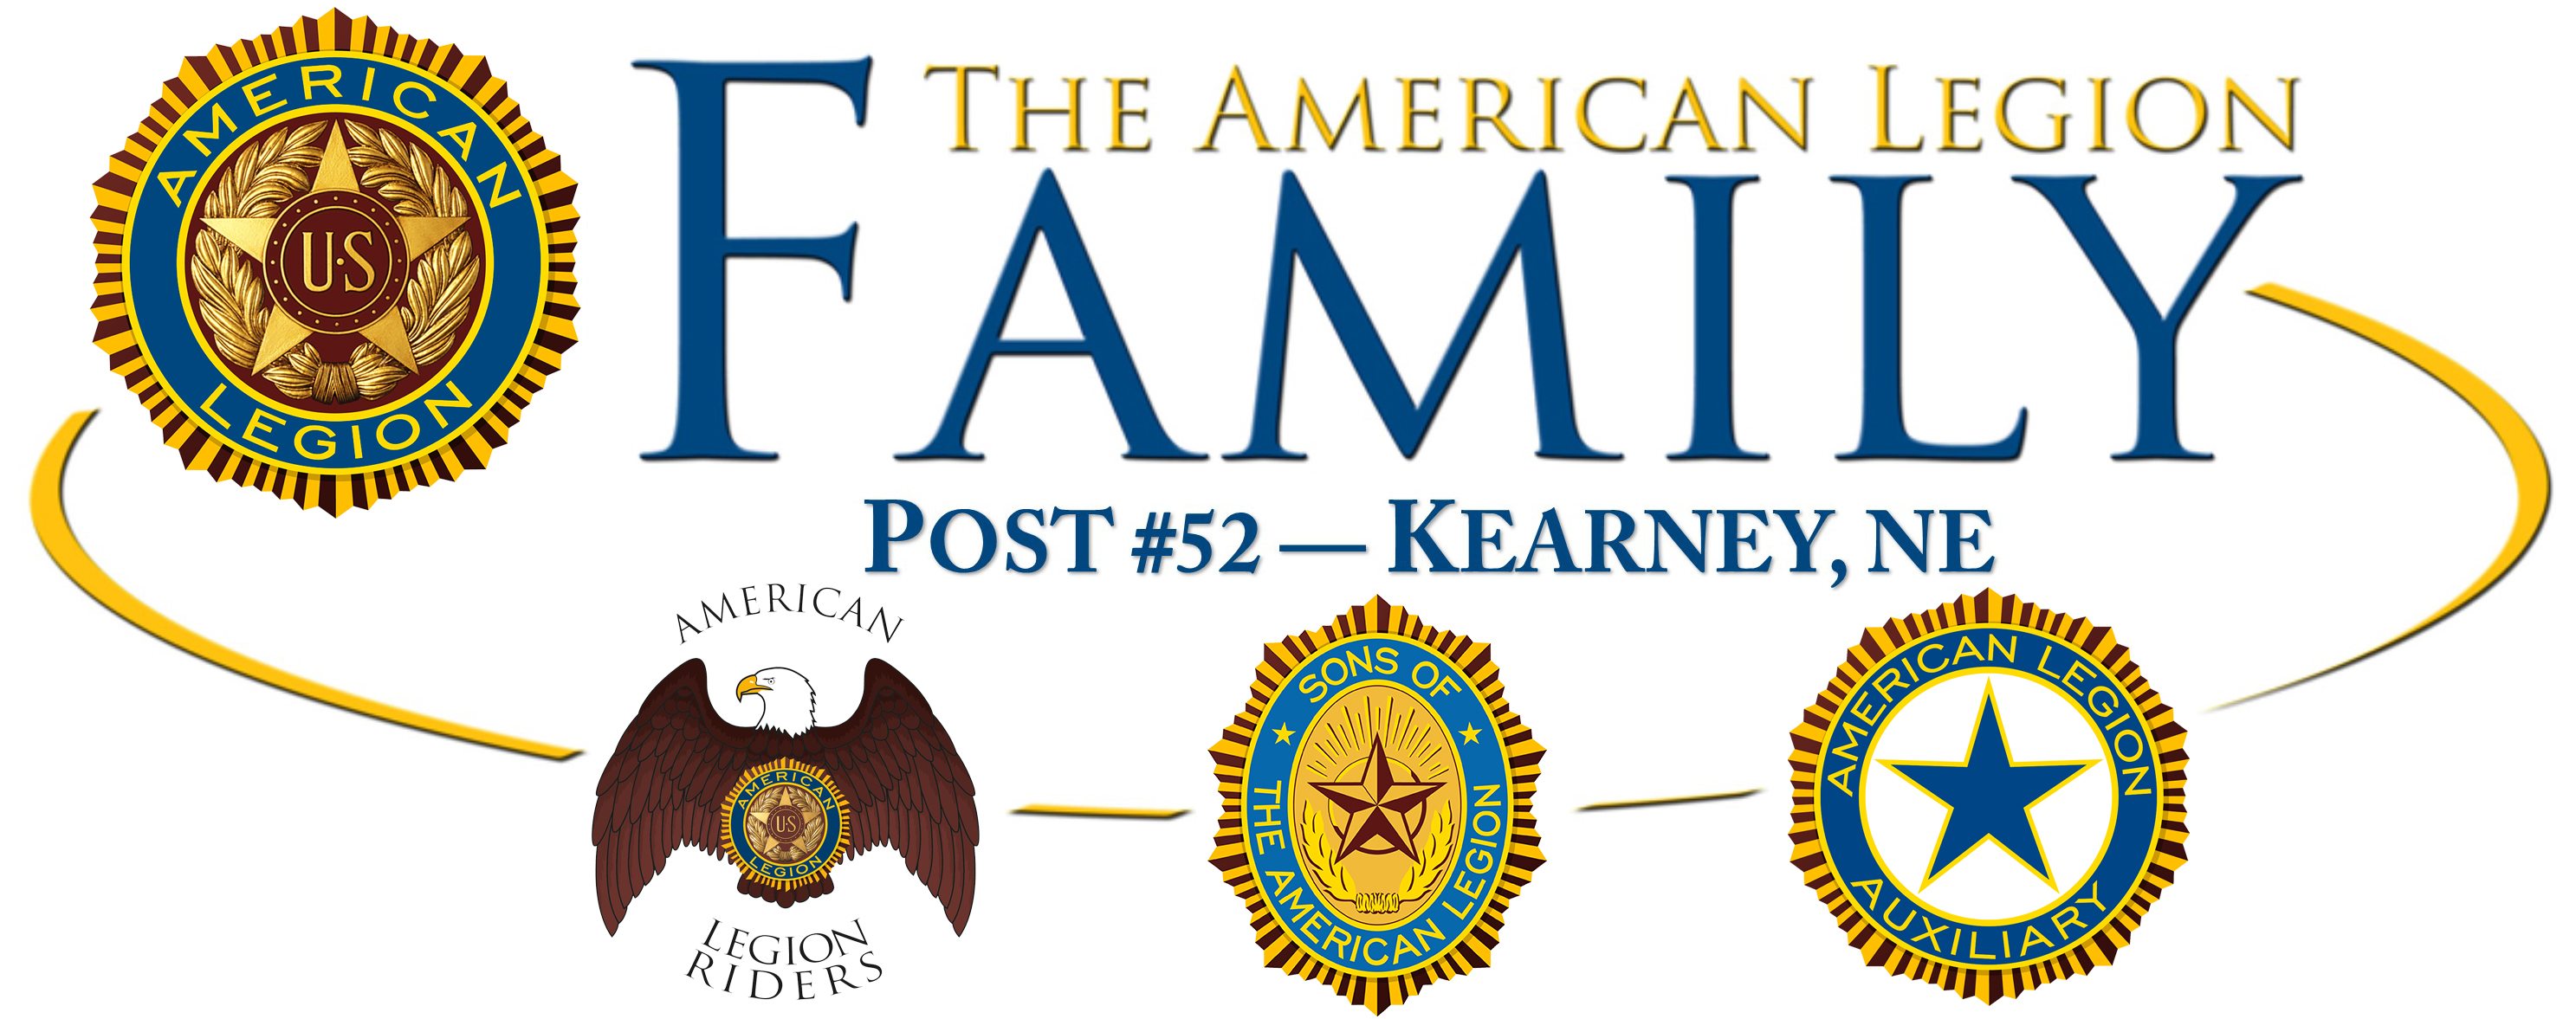 American Legion Post #52 | Kearney, NE